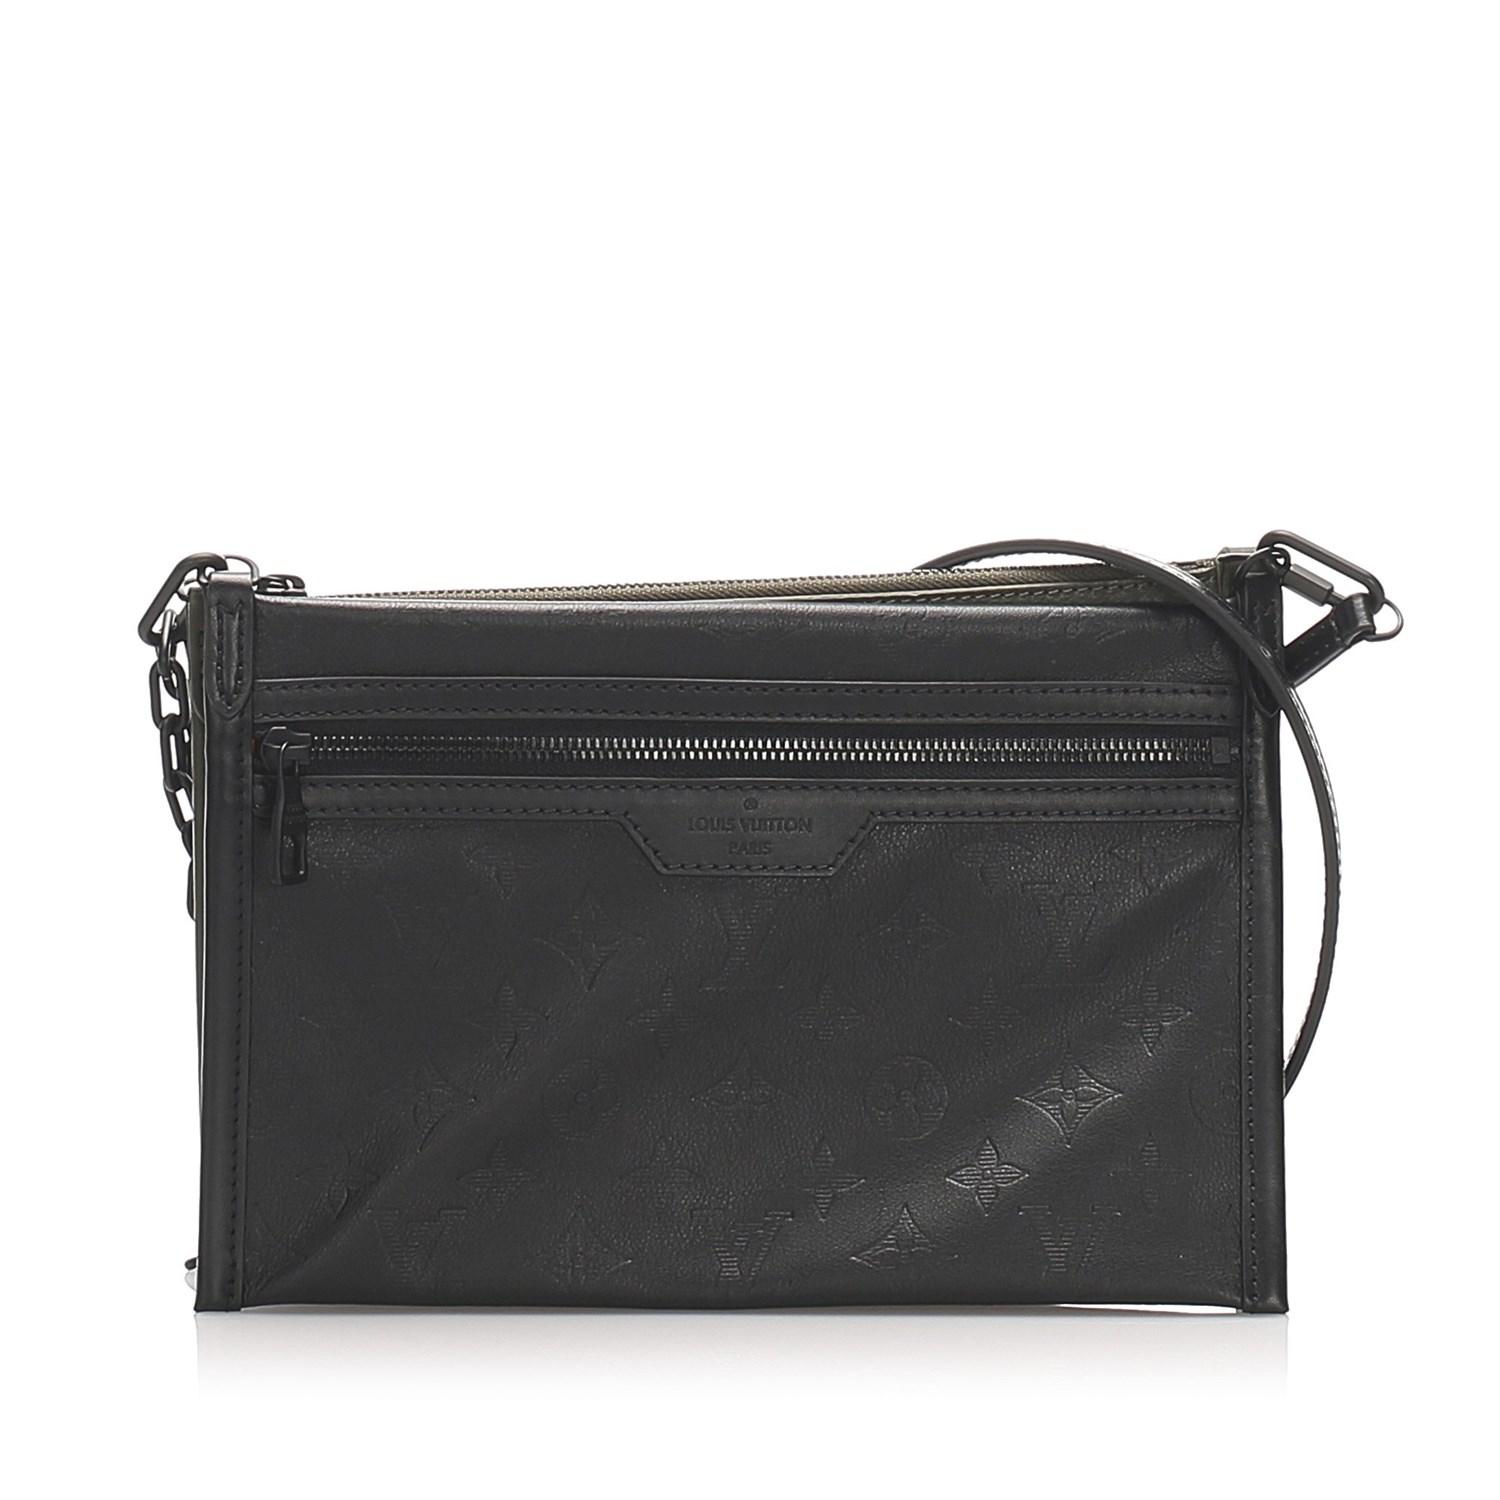 Louis Vuitton Leather Black Monogram Shadow Double Flat Messenger Bag for Men - Lyst